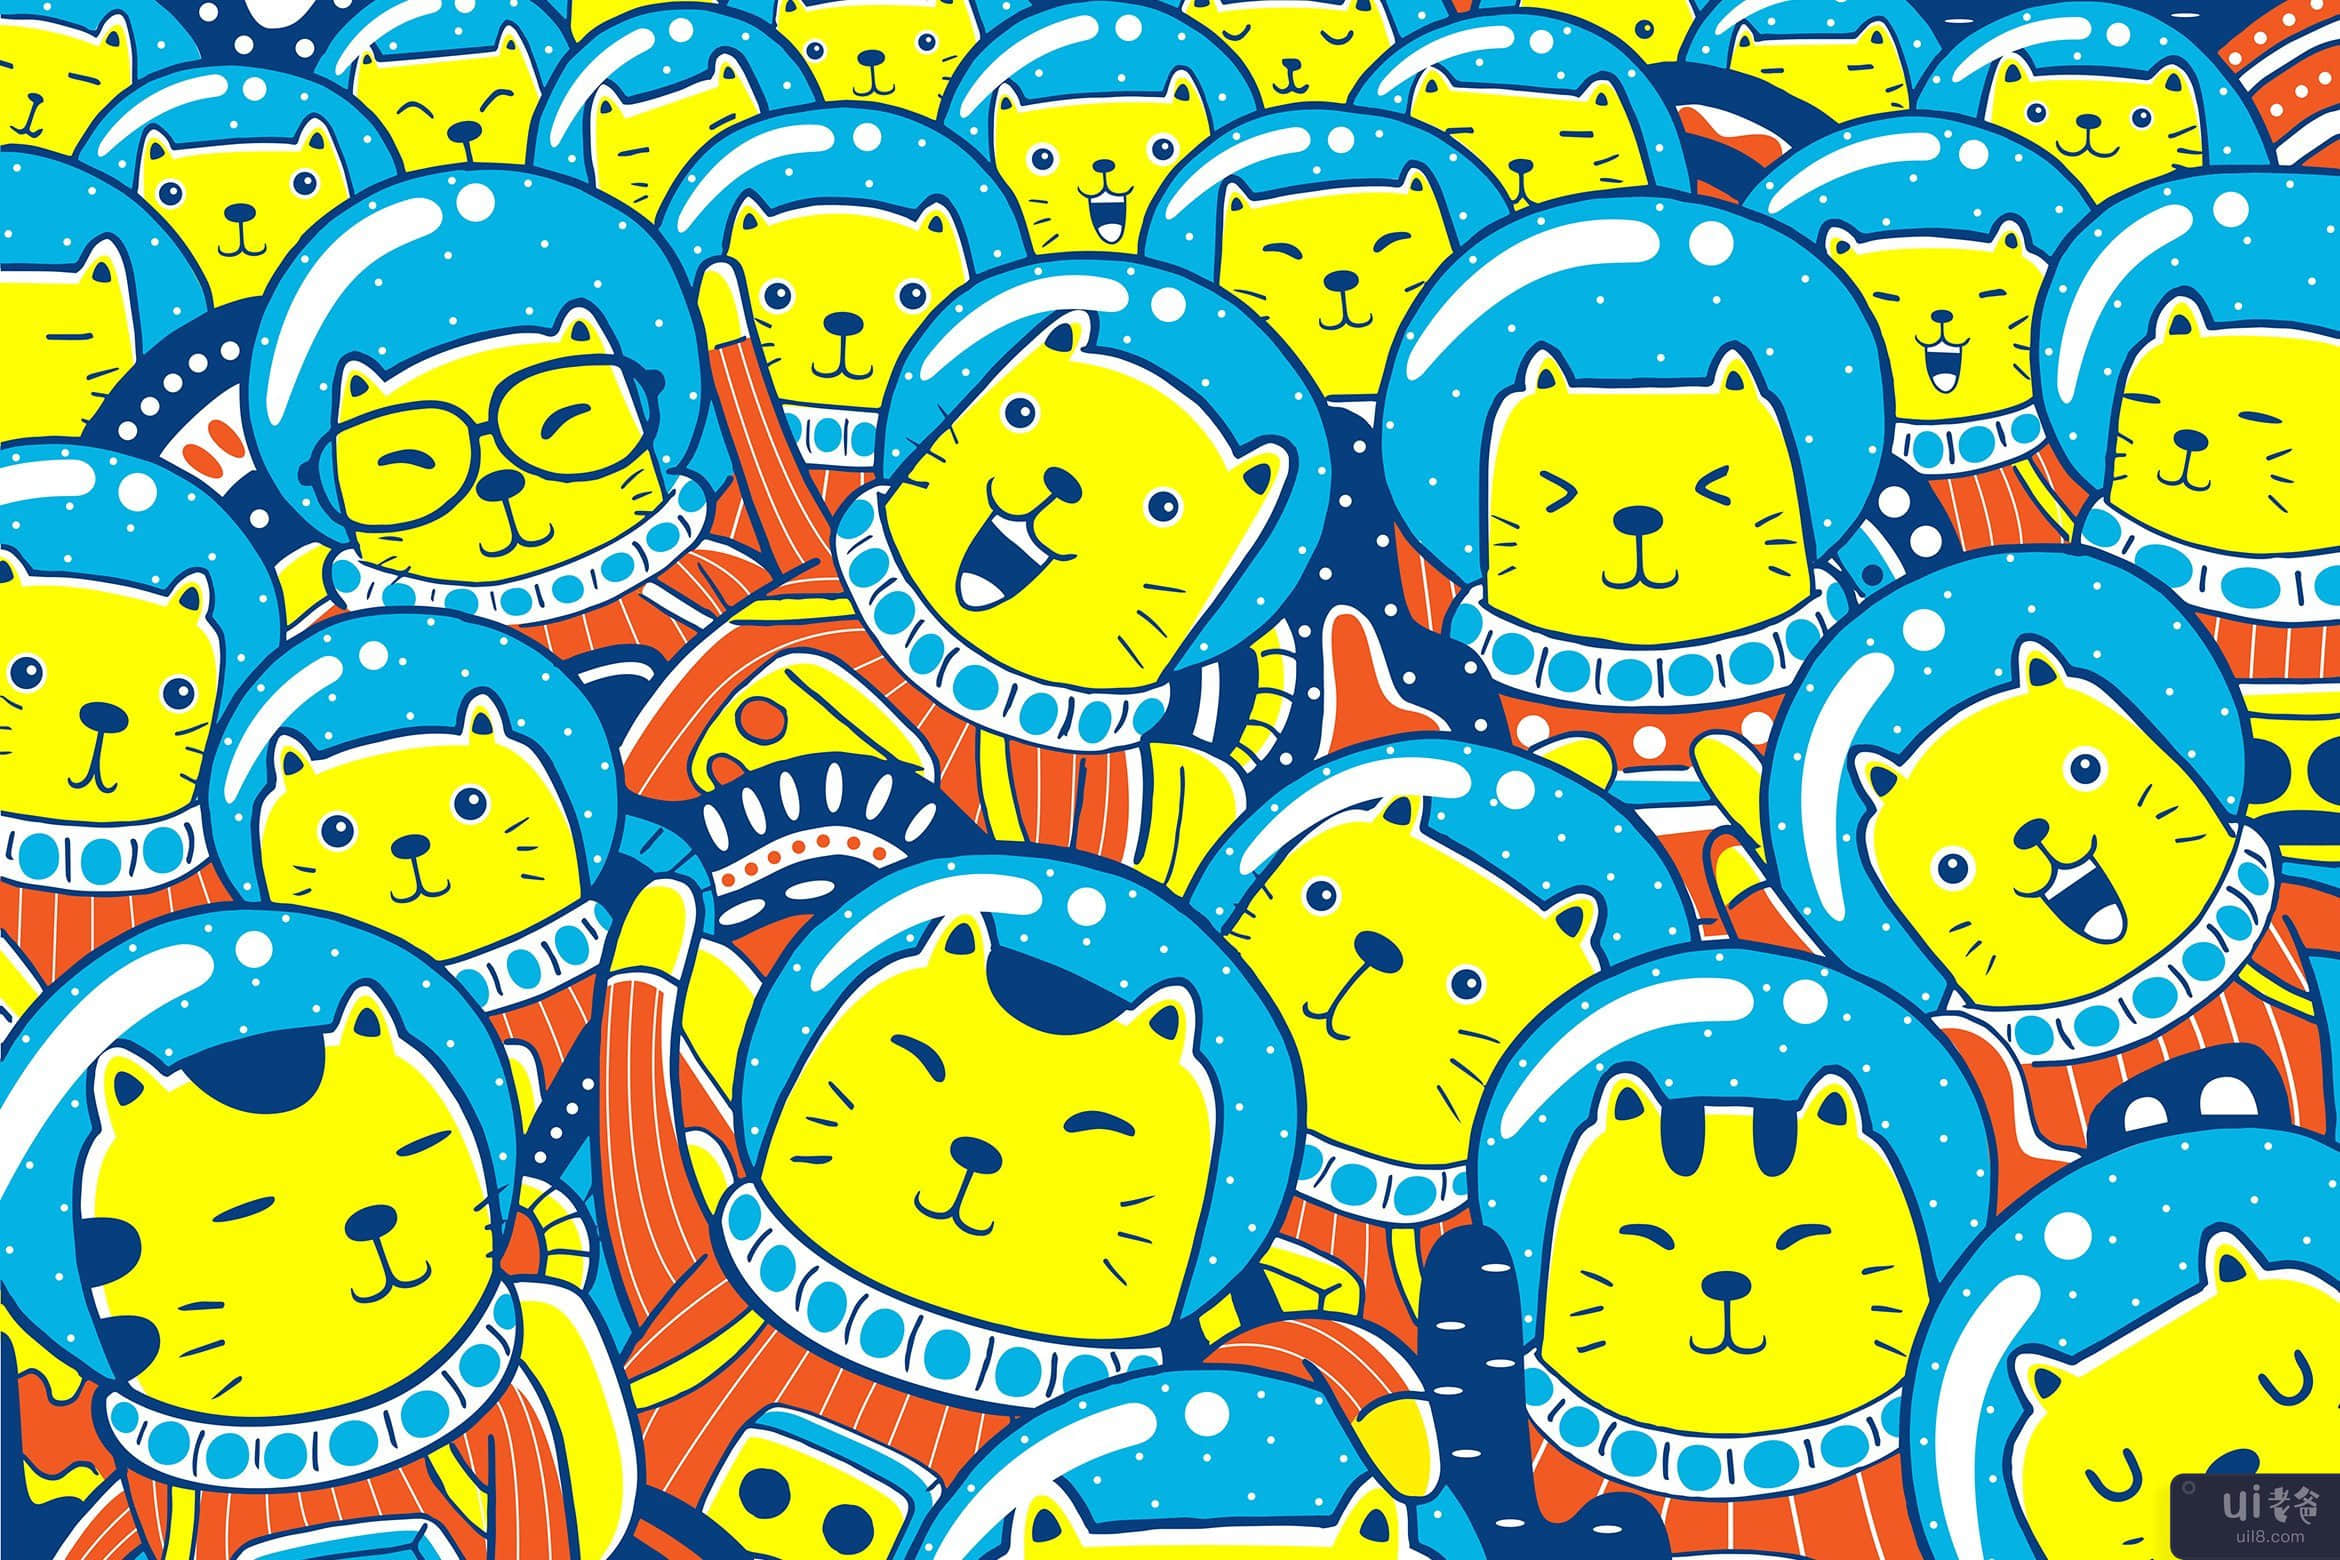 Catstronaut 字符矢量图(Catstronaut Character Vector Illustration)插图2